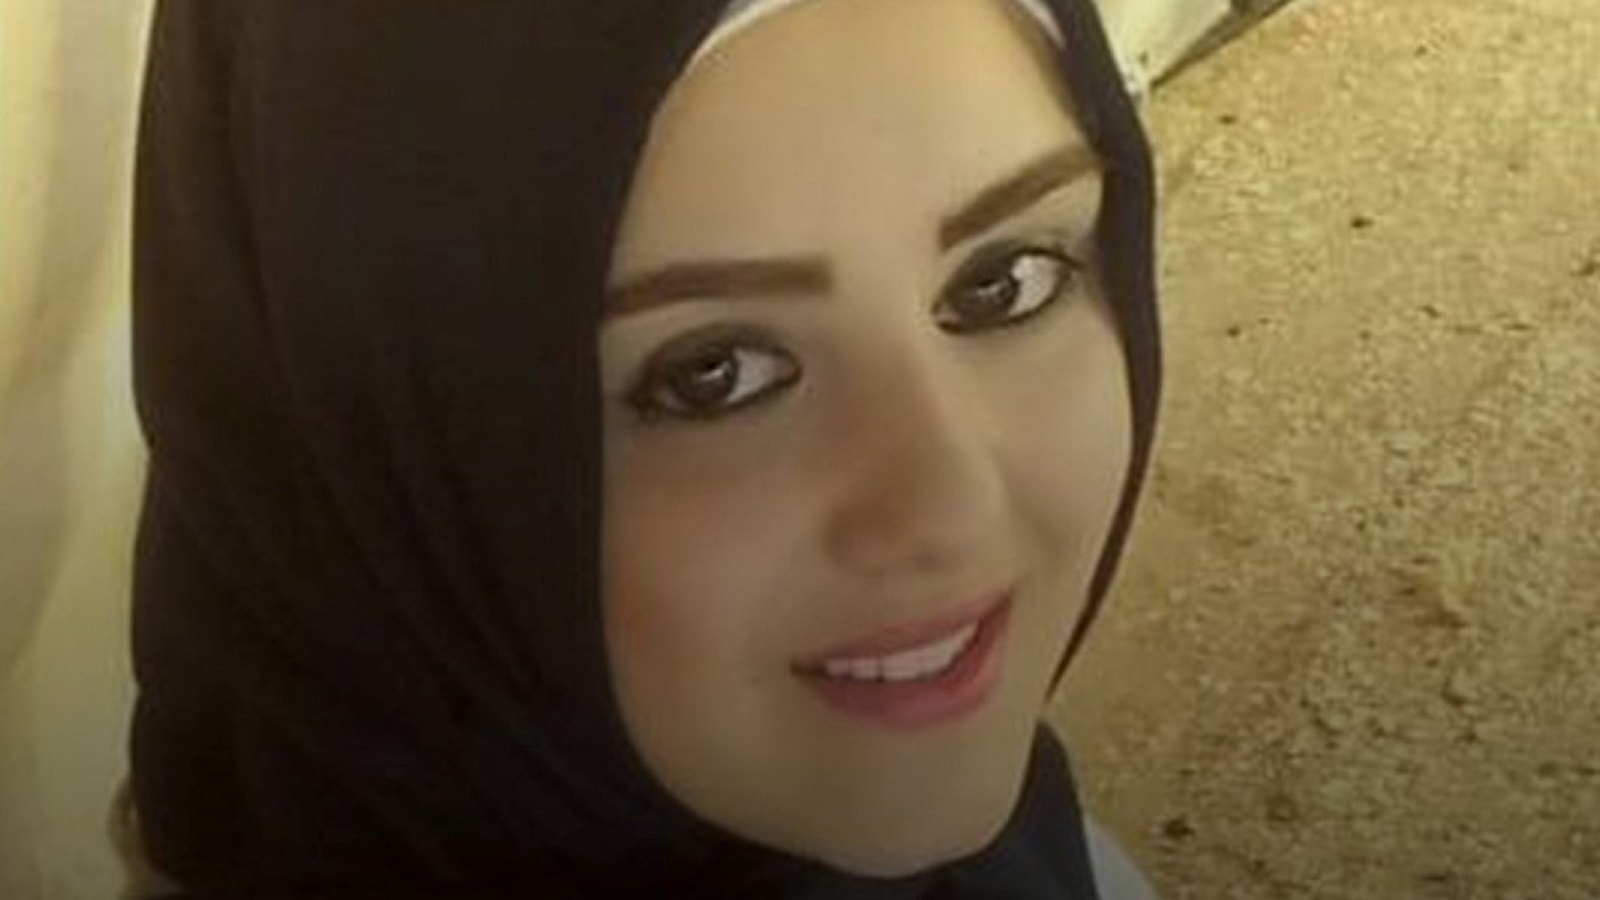 هناء خضر استسلمت لحروقها: مسلسل الوحشية ضد النساء يتفاقم